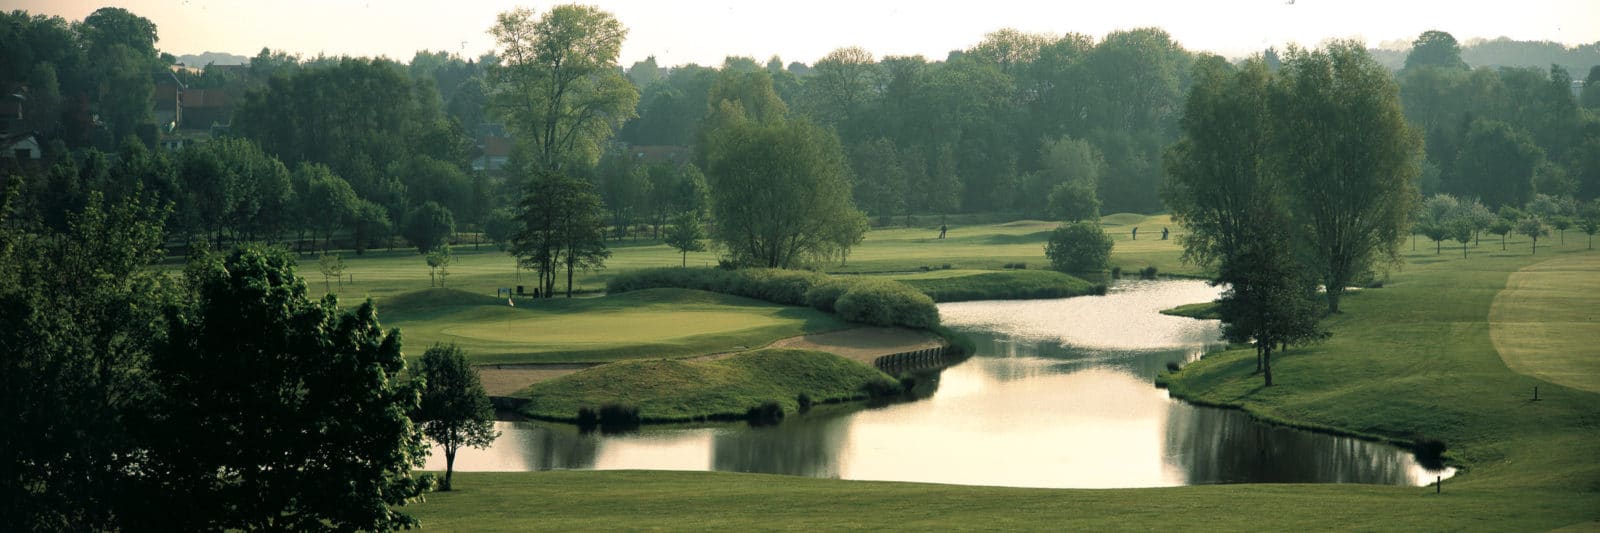 Golf Club de Thumeries Douai